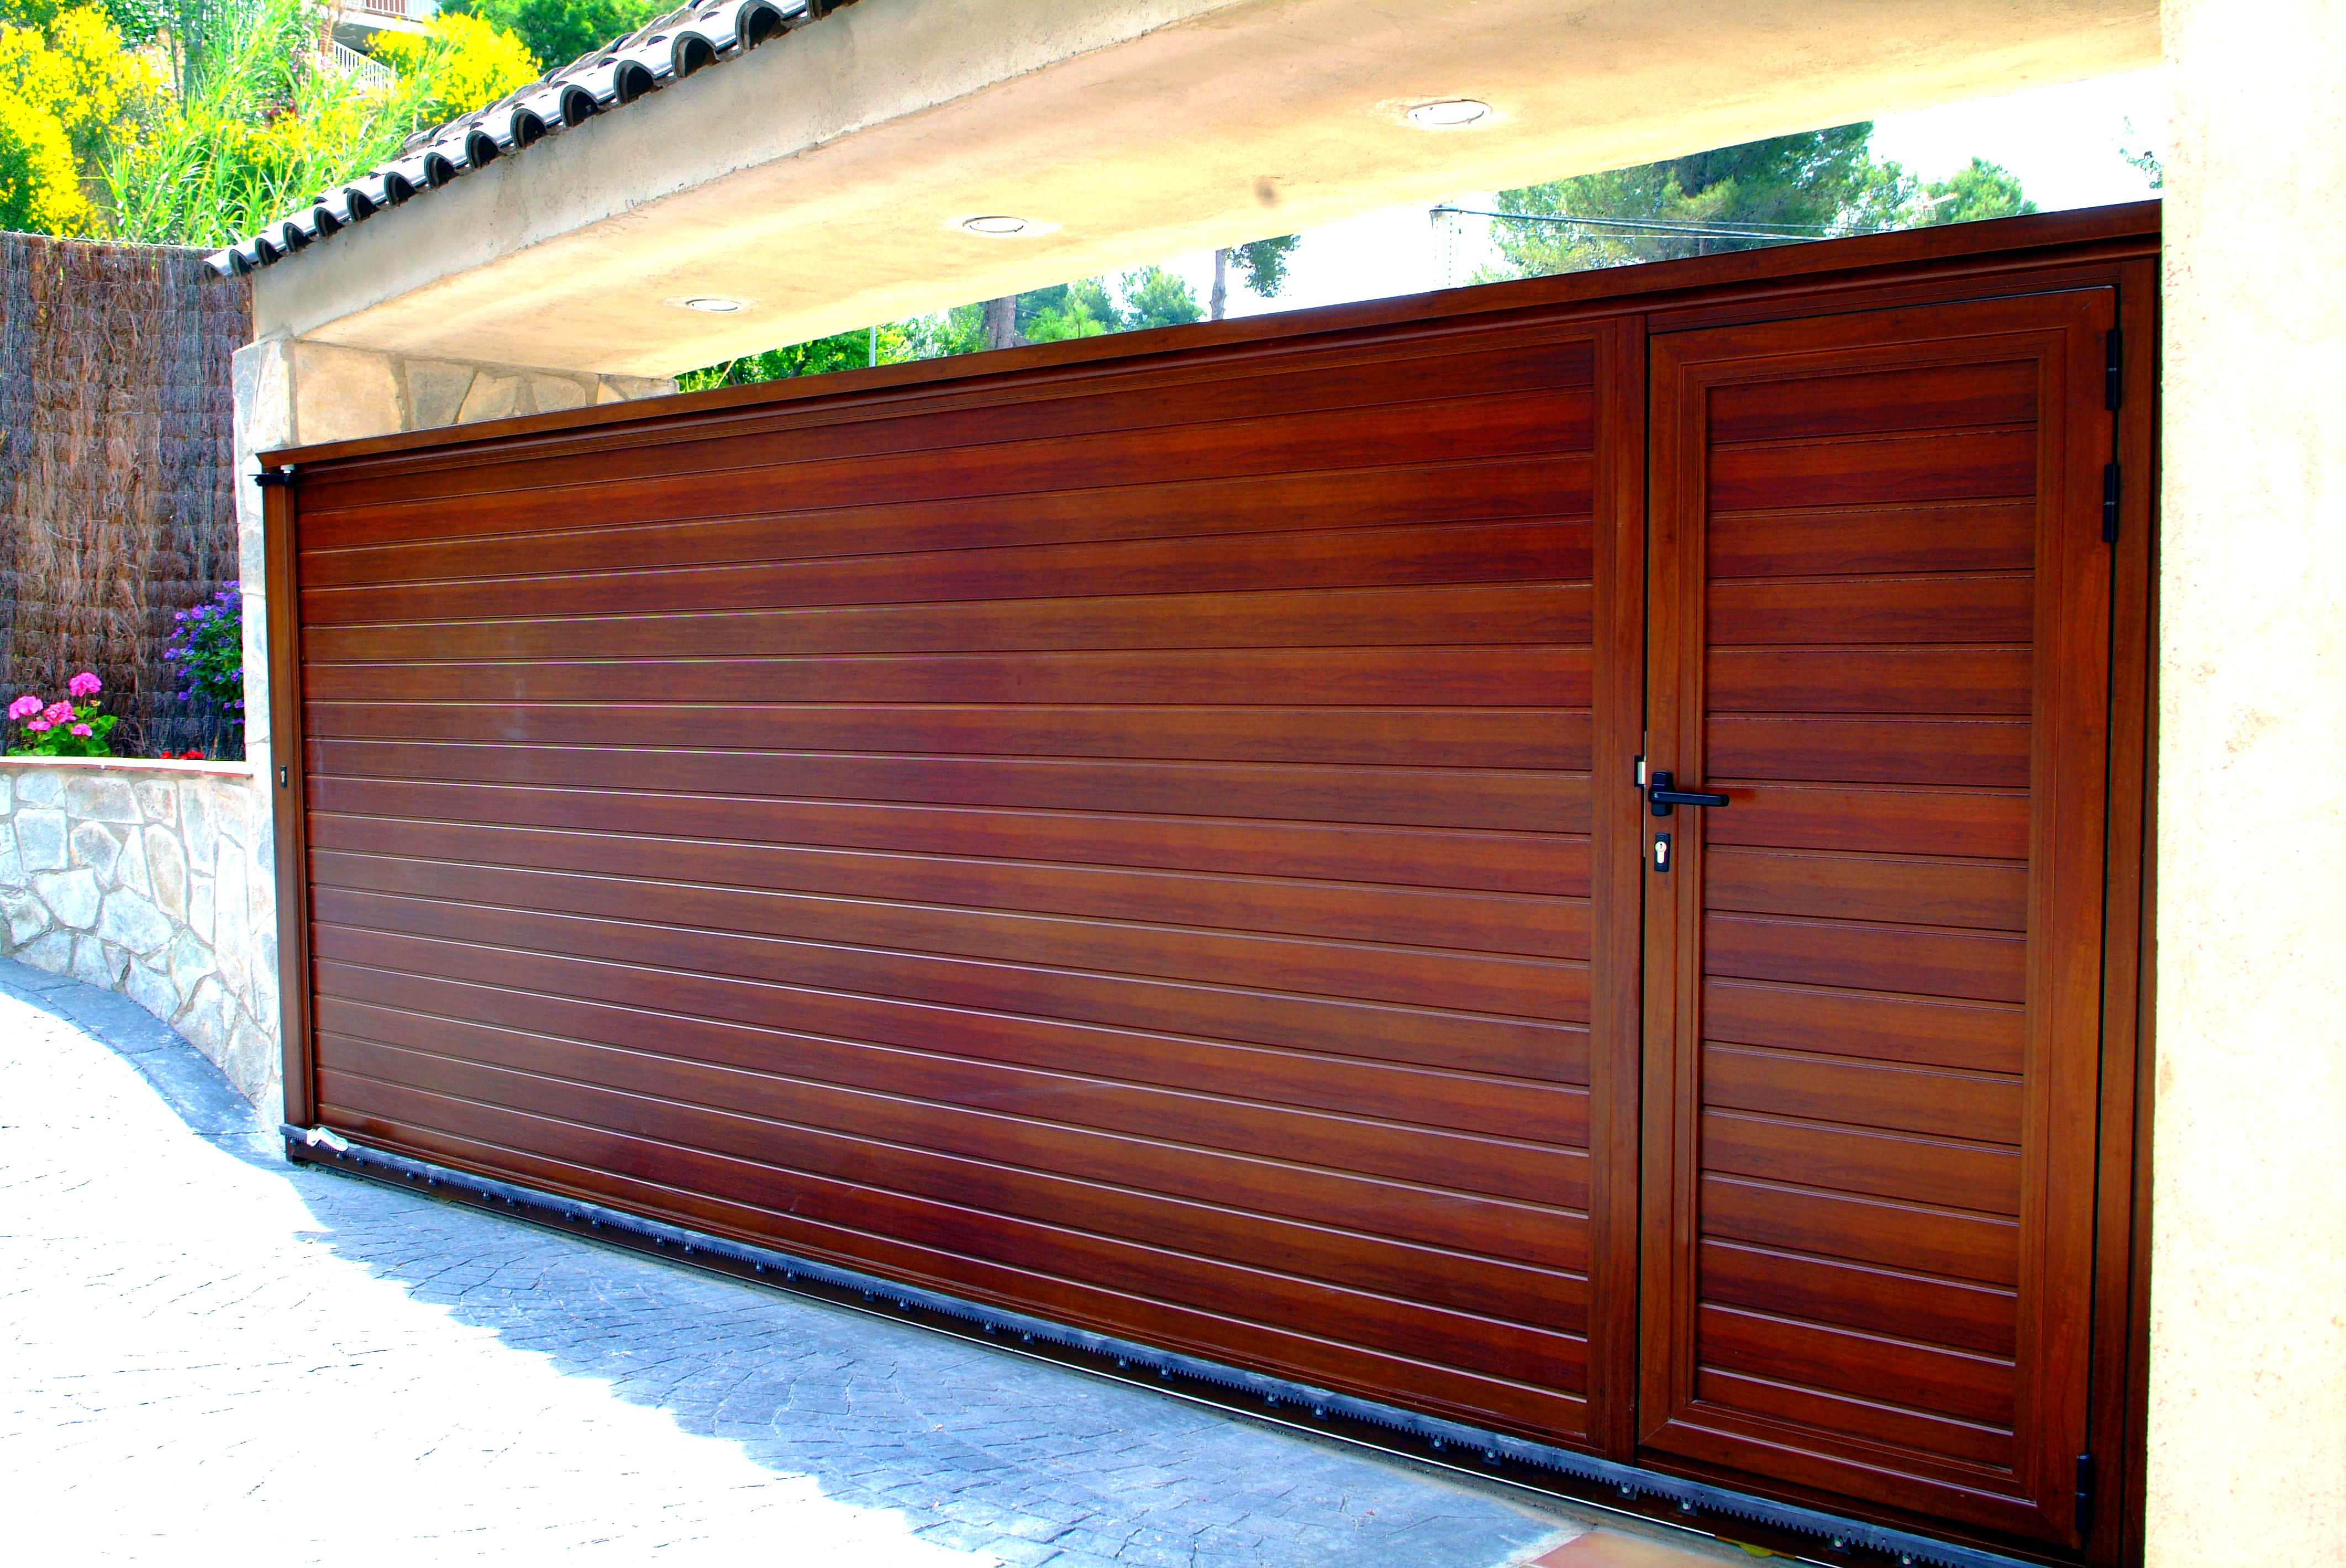 Puerta corredera de aluminio imitación madera con puerta peatonal incorporada